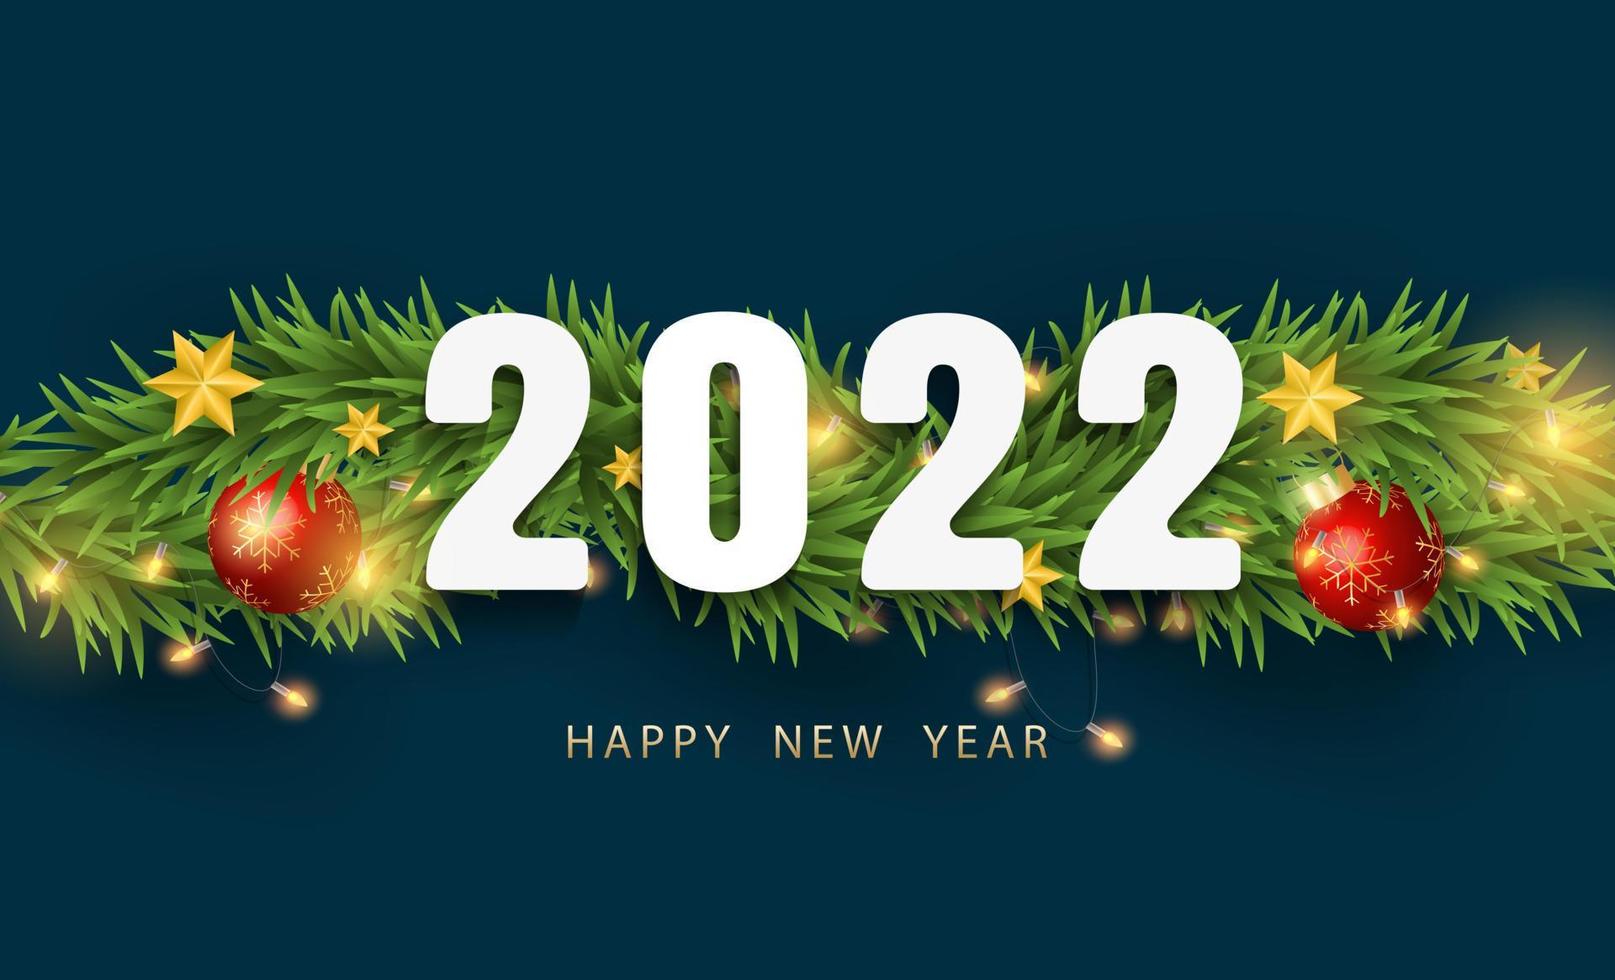 prettige kerstdagen en gelukkig nieuwjaar 2022. realistische 3d glanzende ster, takken, kerstballen en licht op donkere achtergrond met wit nummerontwerp. vector illustratie